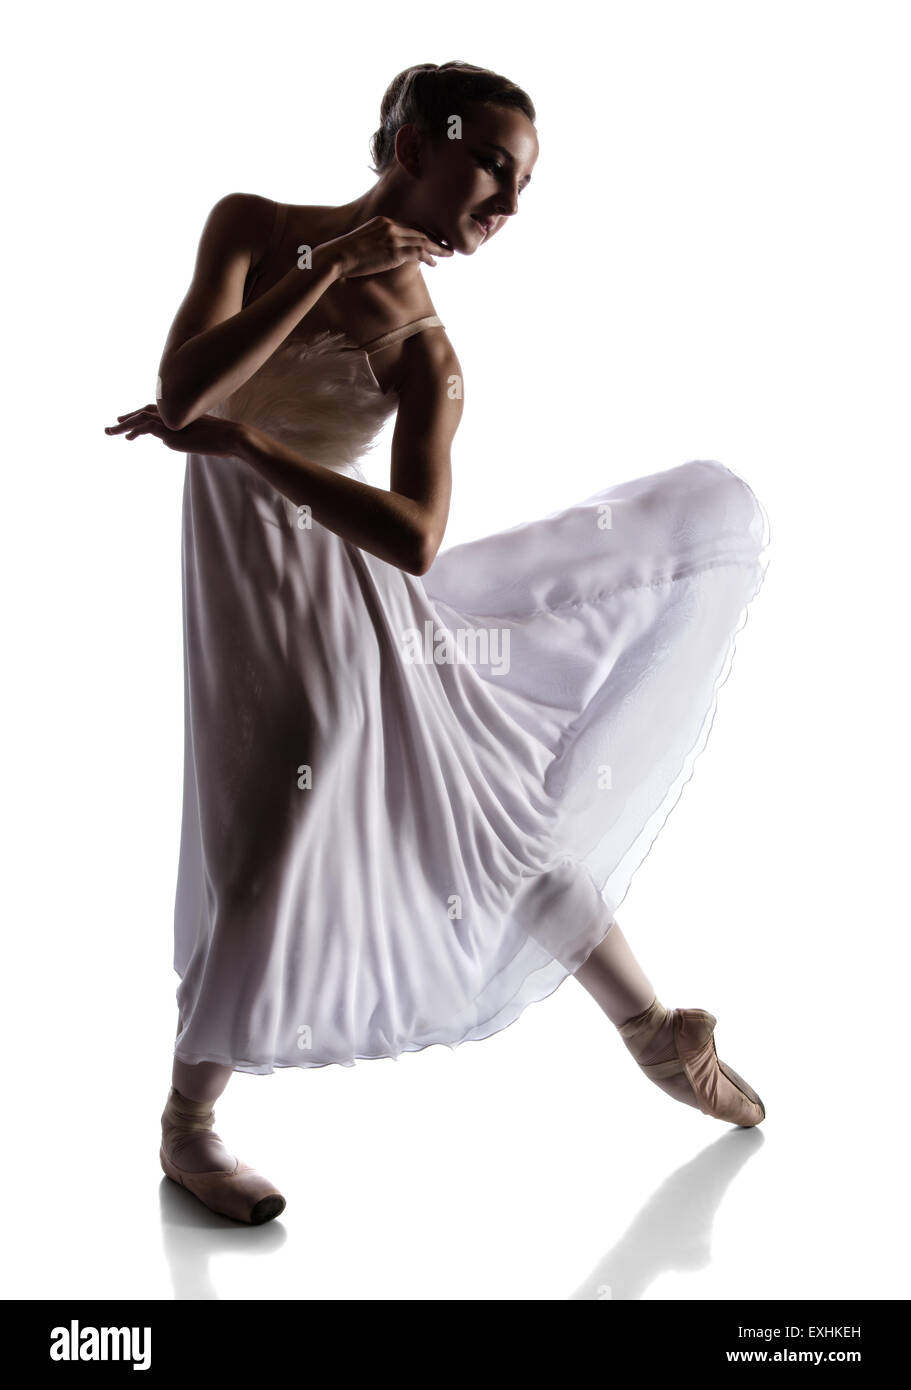 Silhouette d'une belle femme ballerine isolé sur un fond blanc. Ballerine est vêtue d'une robe blanche avec des plumes Banque D'Images